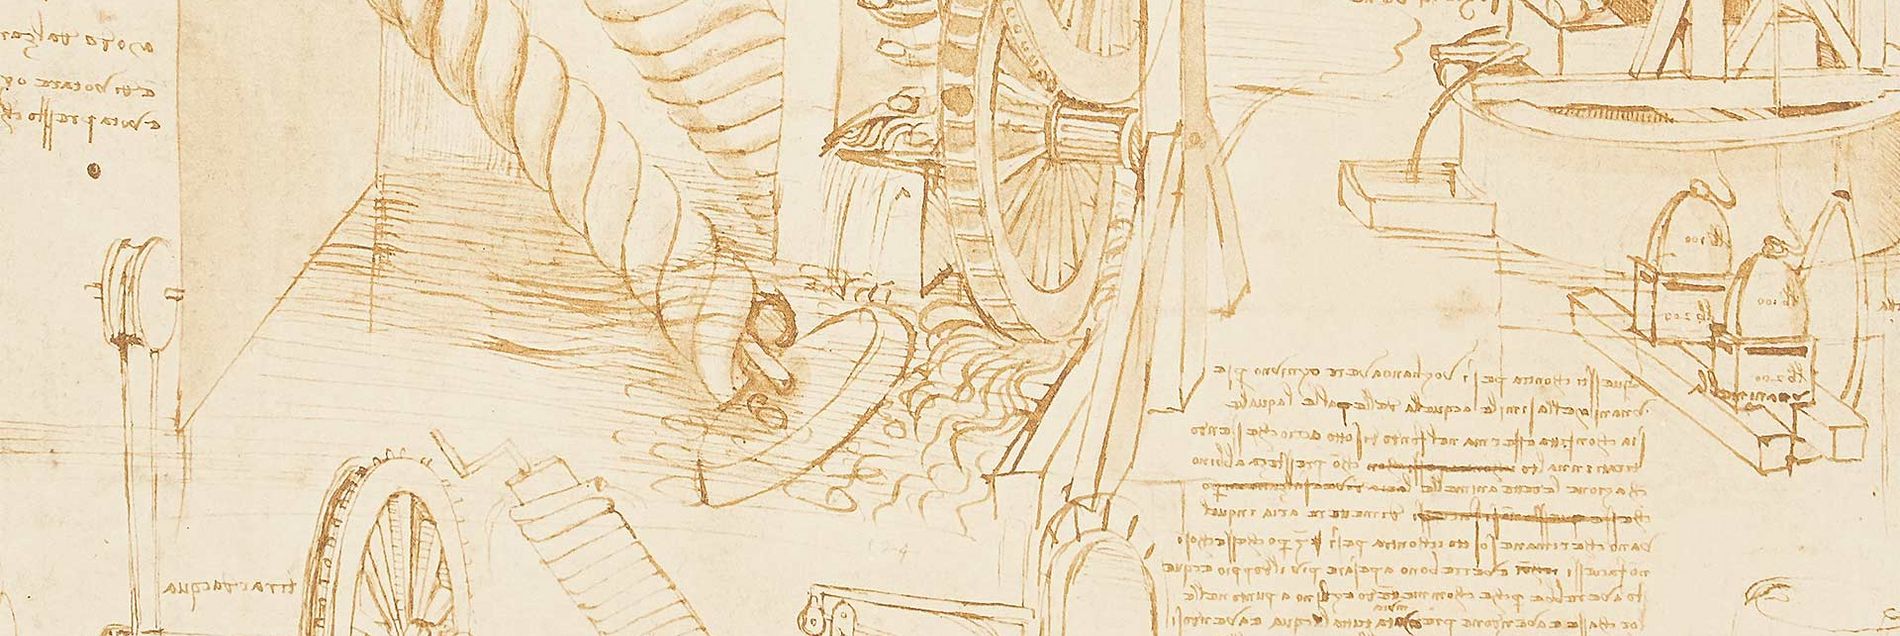 <i>„Die größte zusammenhängende Sammlung von Skizzen und Schriften Leonardo da Vincis“</i>